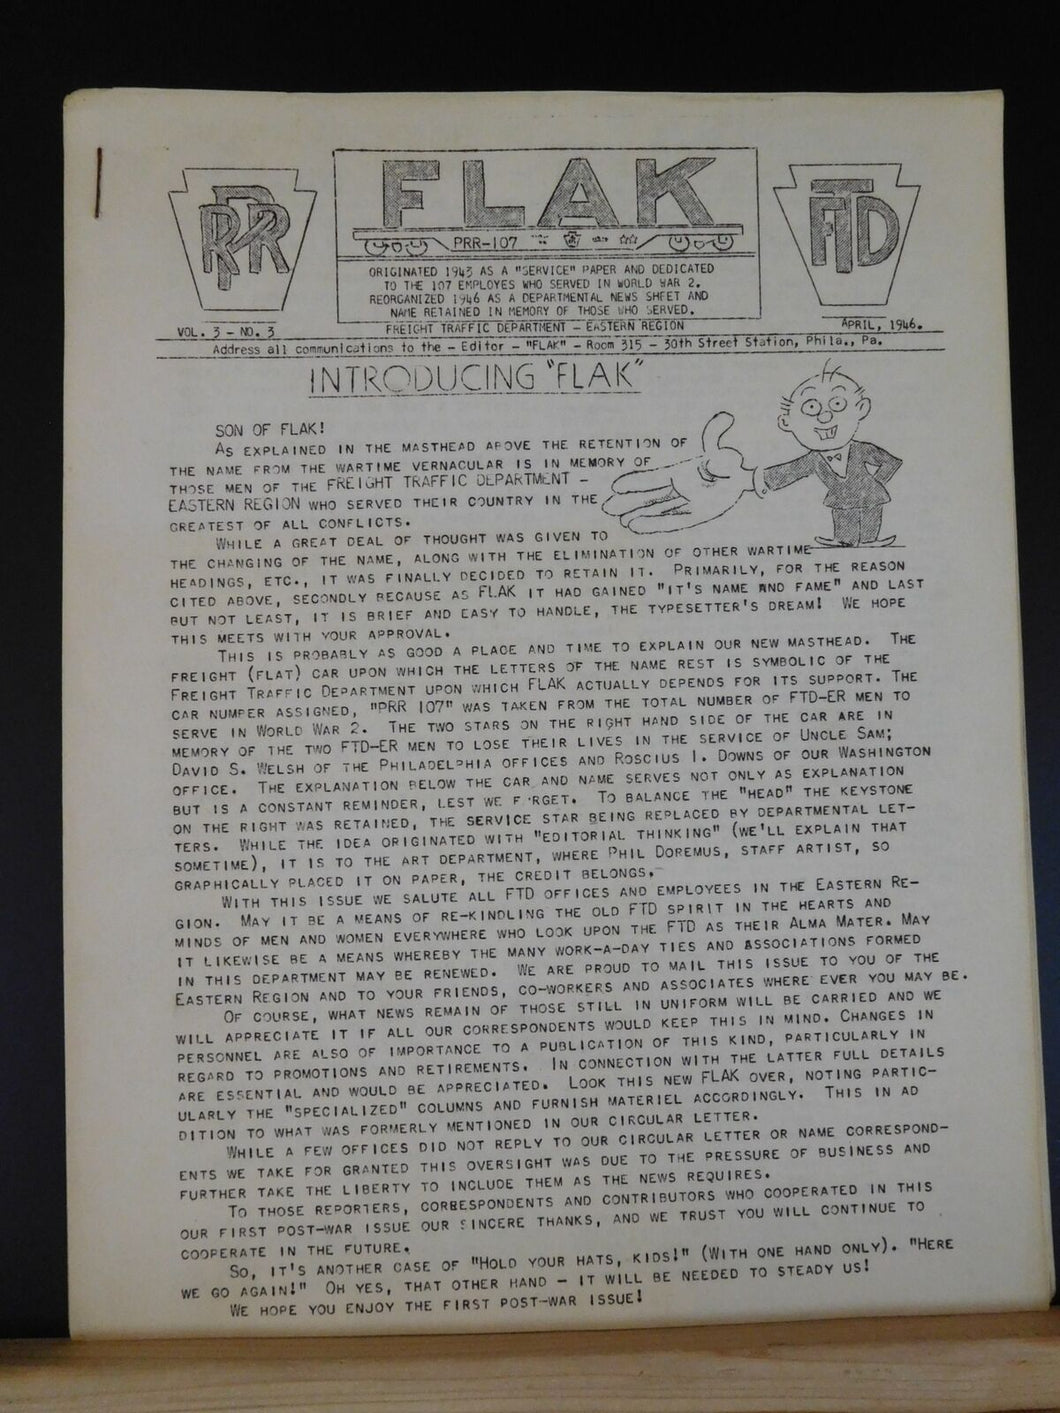 Flak PRR Vol. 3 No. 3 April 1946 Freight Traffic Department